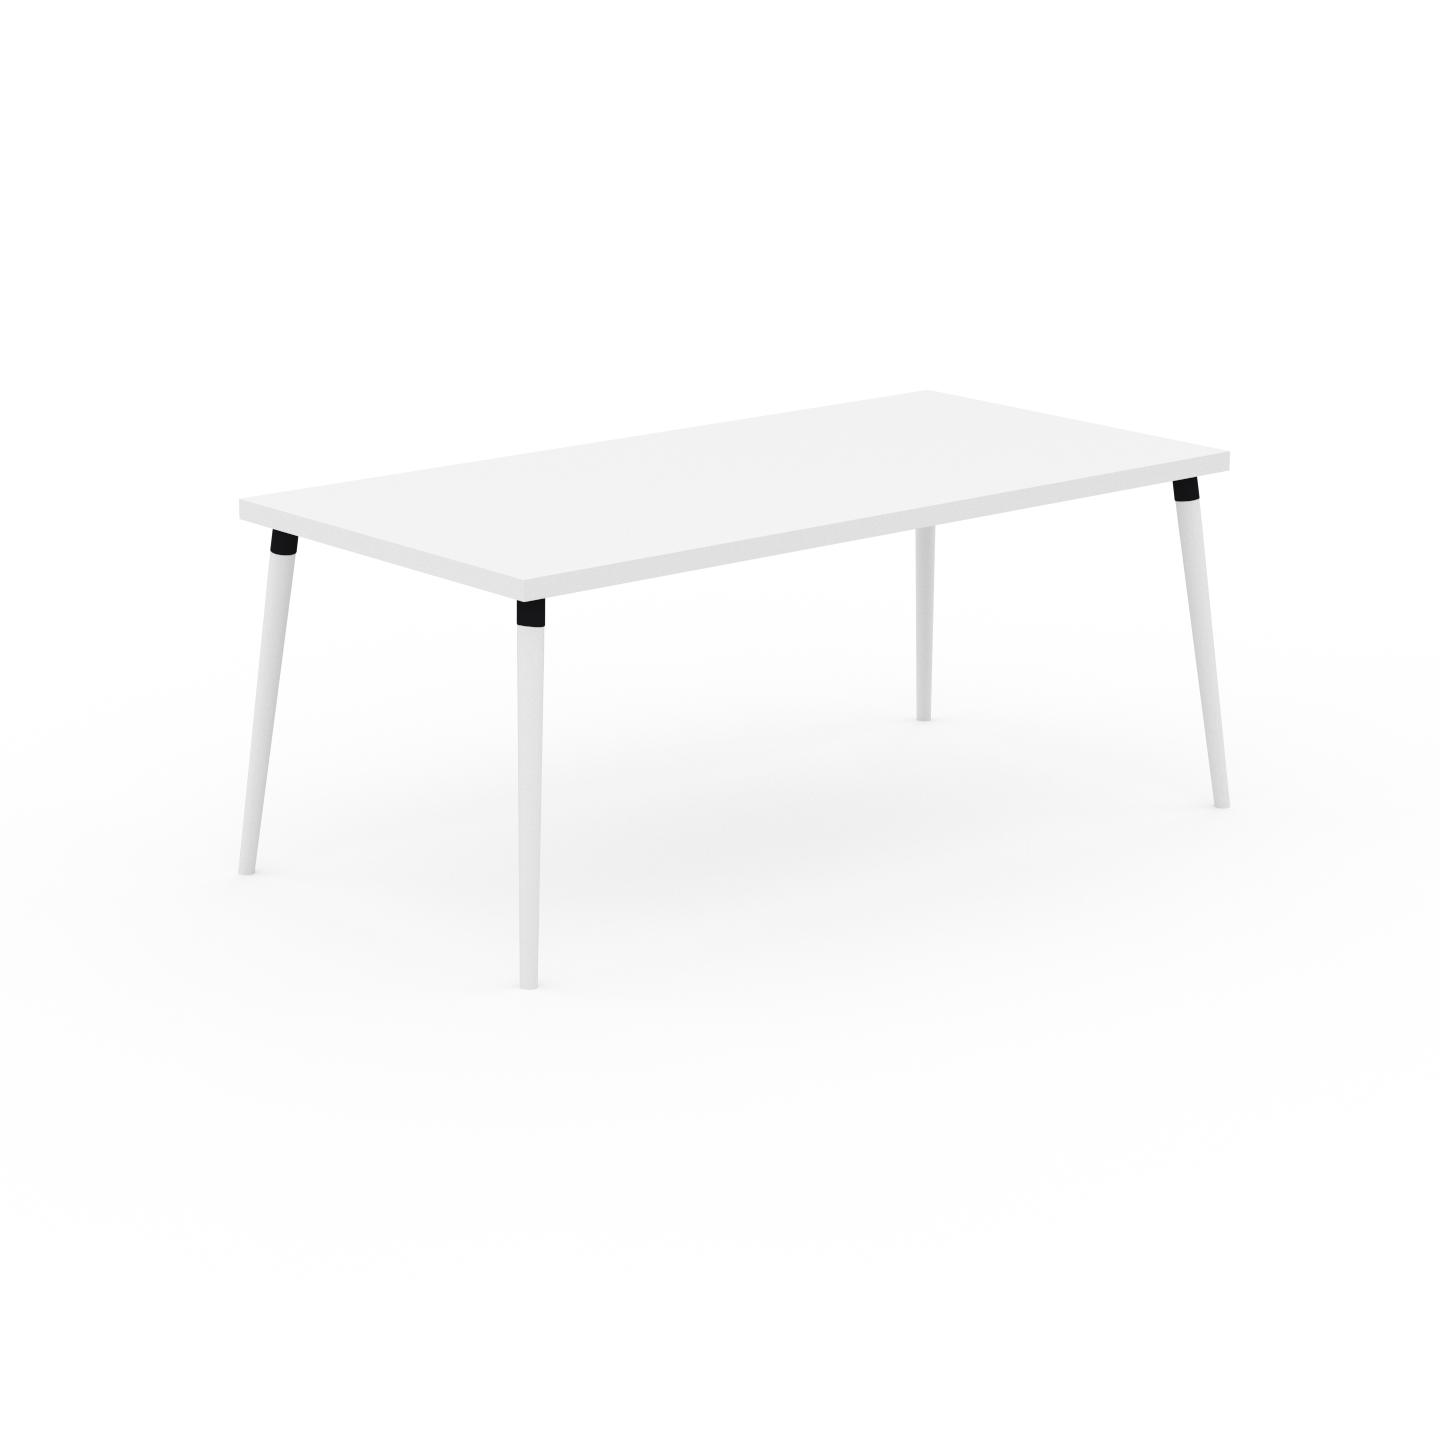 MYCS Schreibtisch Massivholz Weiß - Moderner Massivholz-Schreibtisch: Einzigartiges Design - 180 x 75 x 90 cm, konfigurierbar